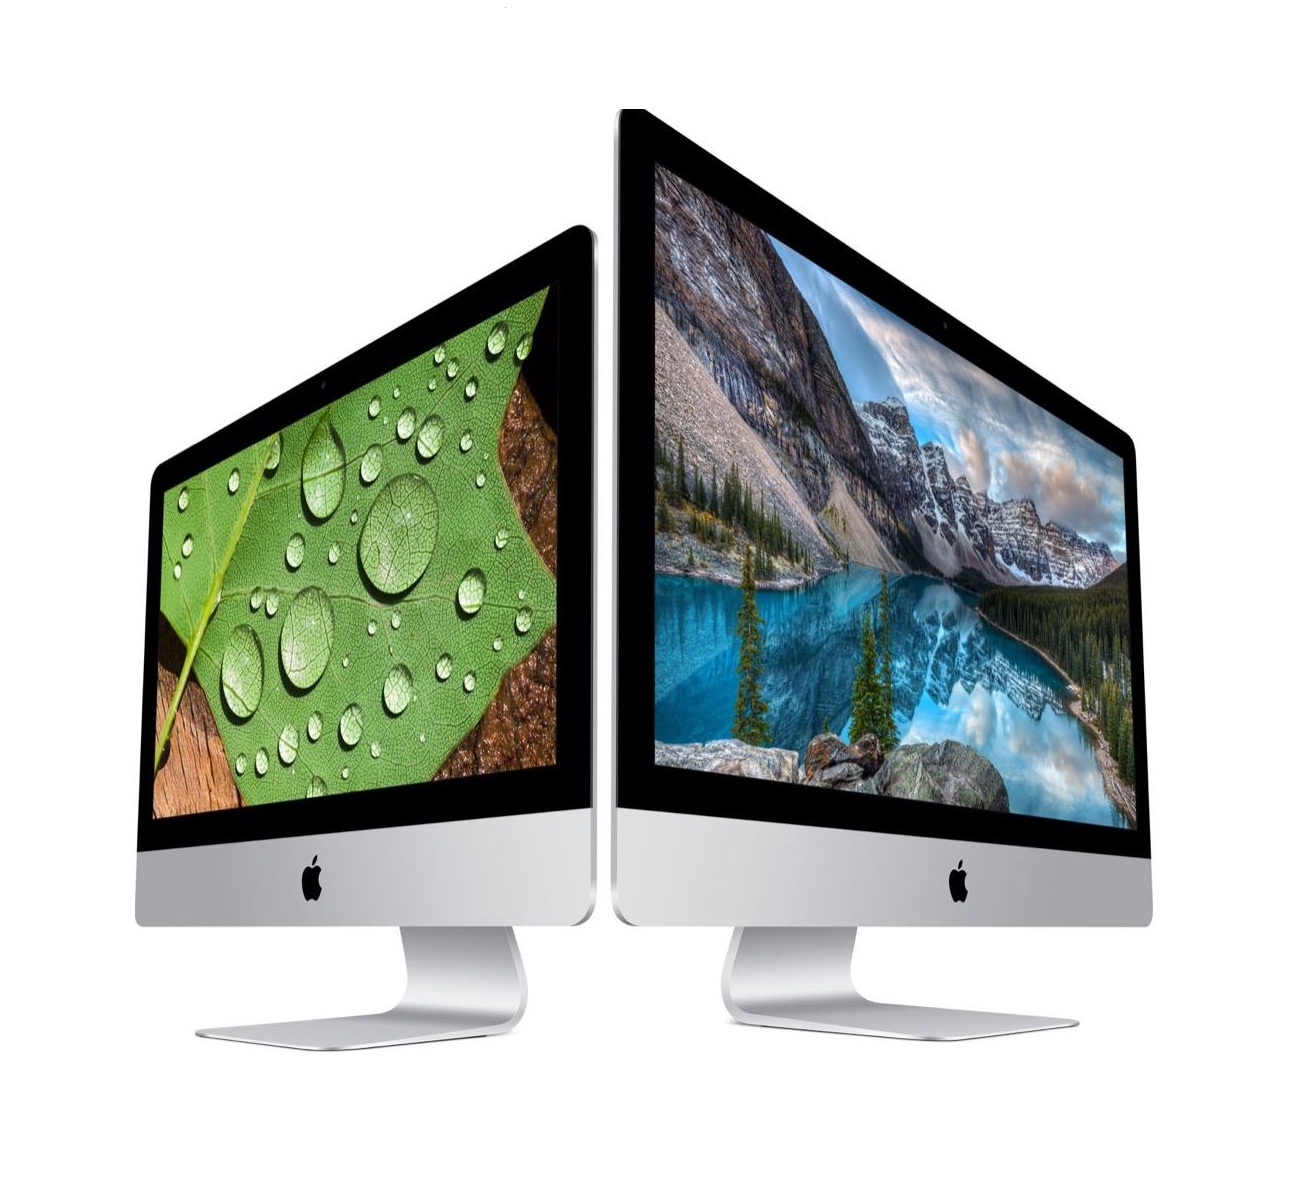 Новый моноблок Apple iMac получит значительно улучшенный дисплей на 27 дюйма и 3D-карты